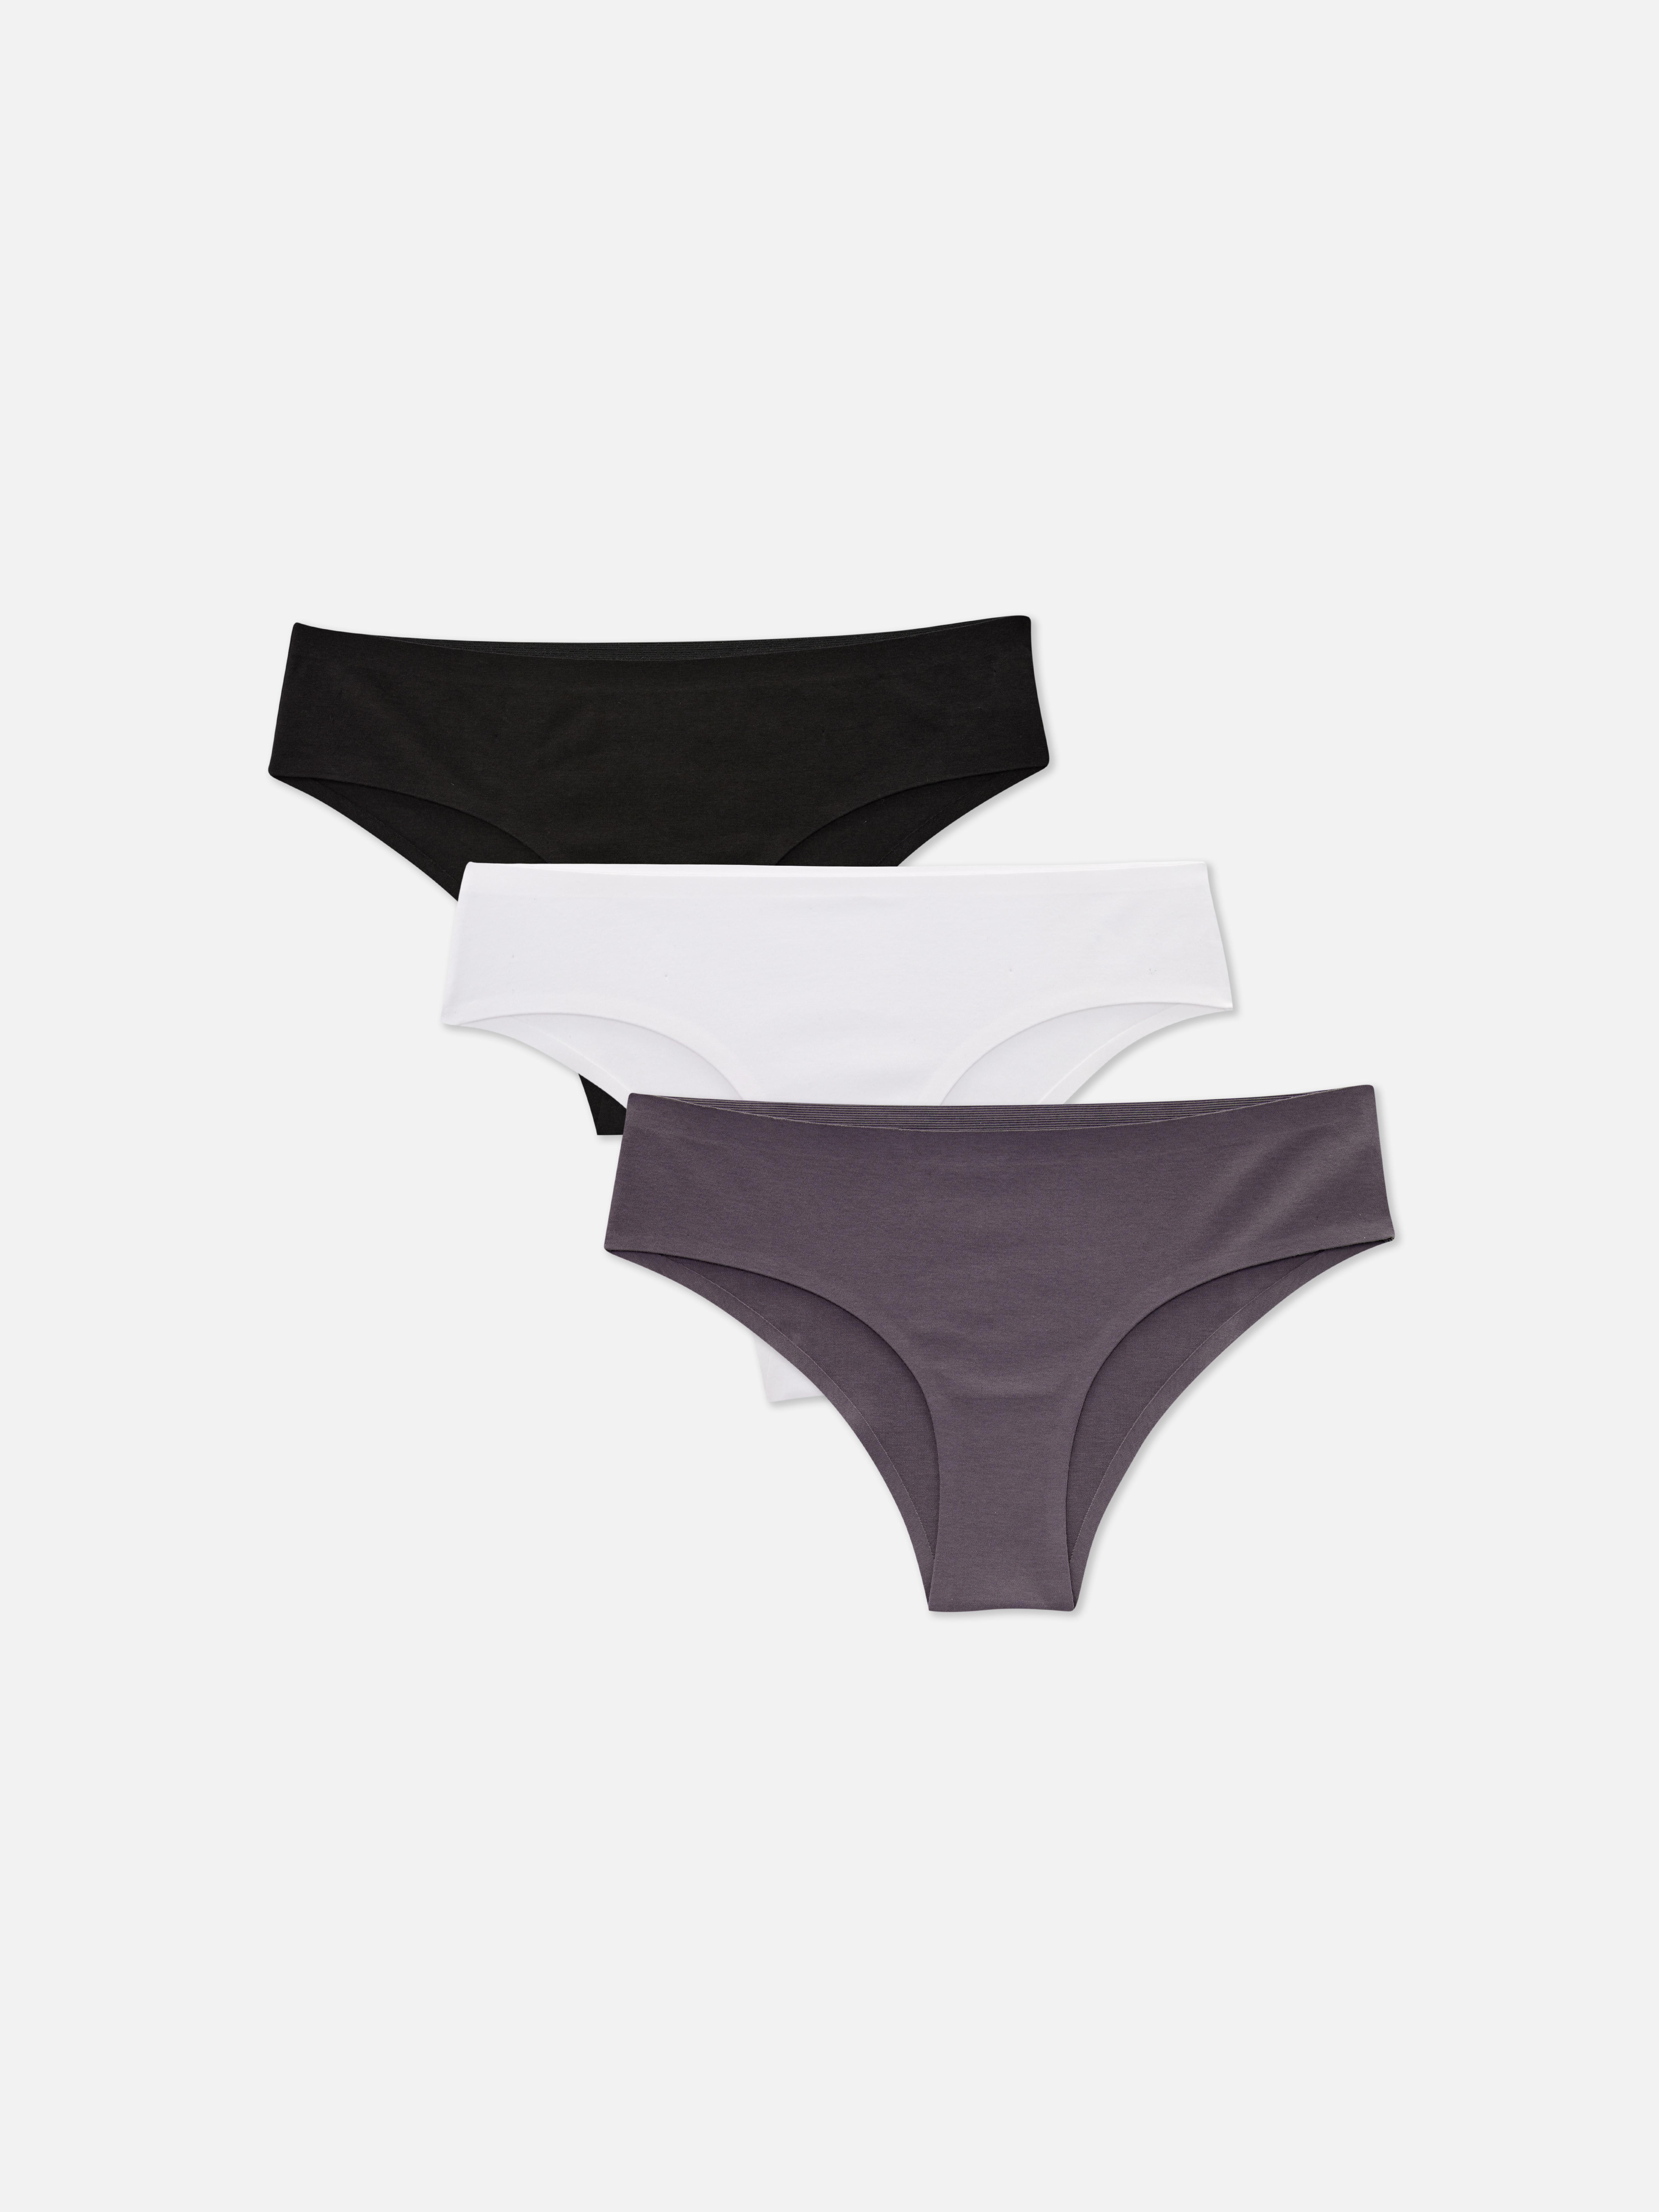 Primark underwear 3 Pack Seamfree Shorts Size XL 18/20